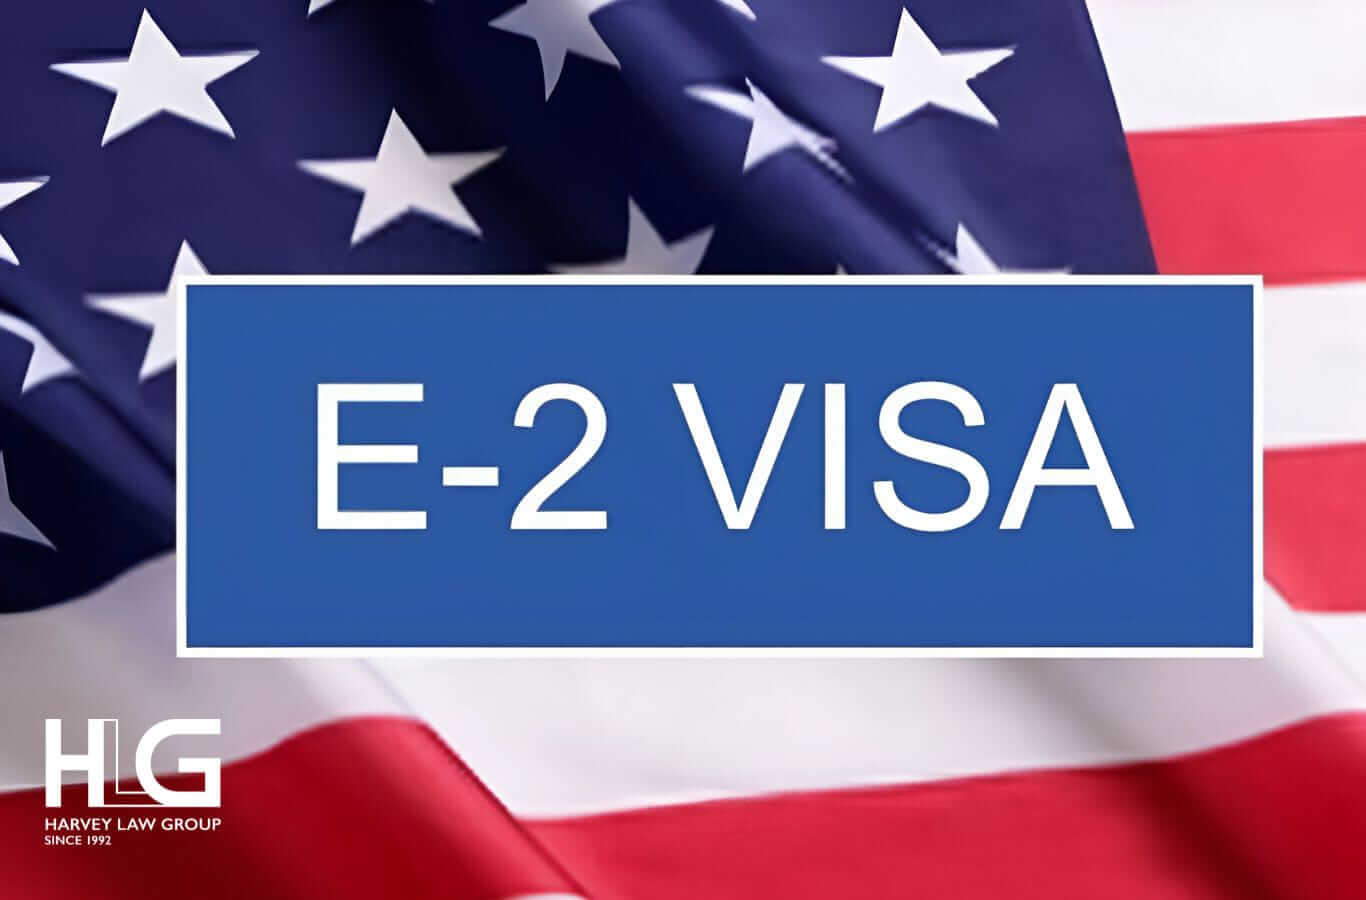 Chi phí định cư Mỹ diện E-2